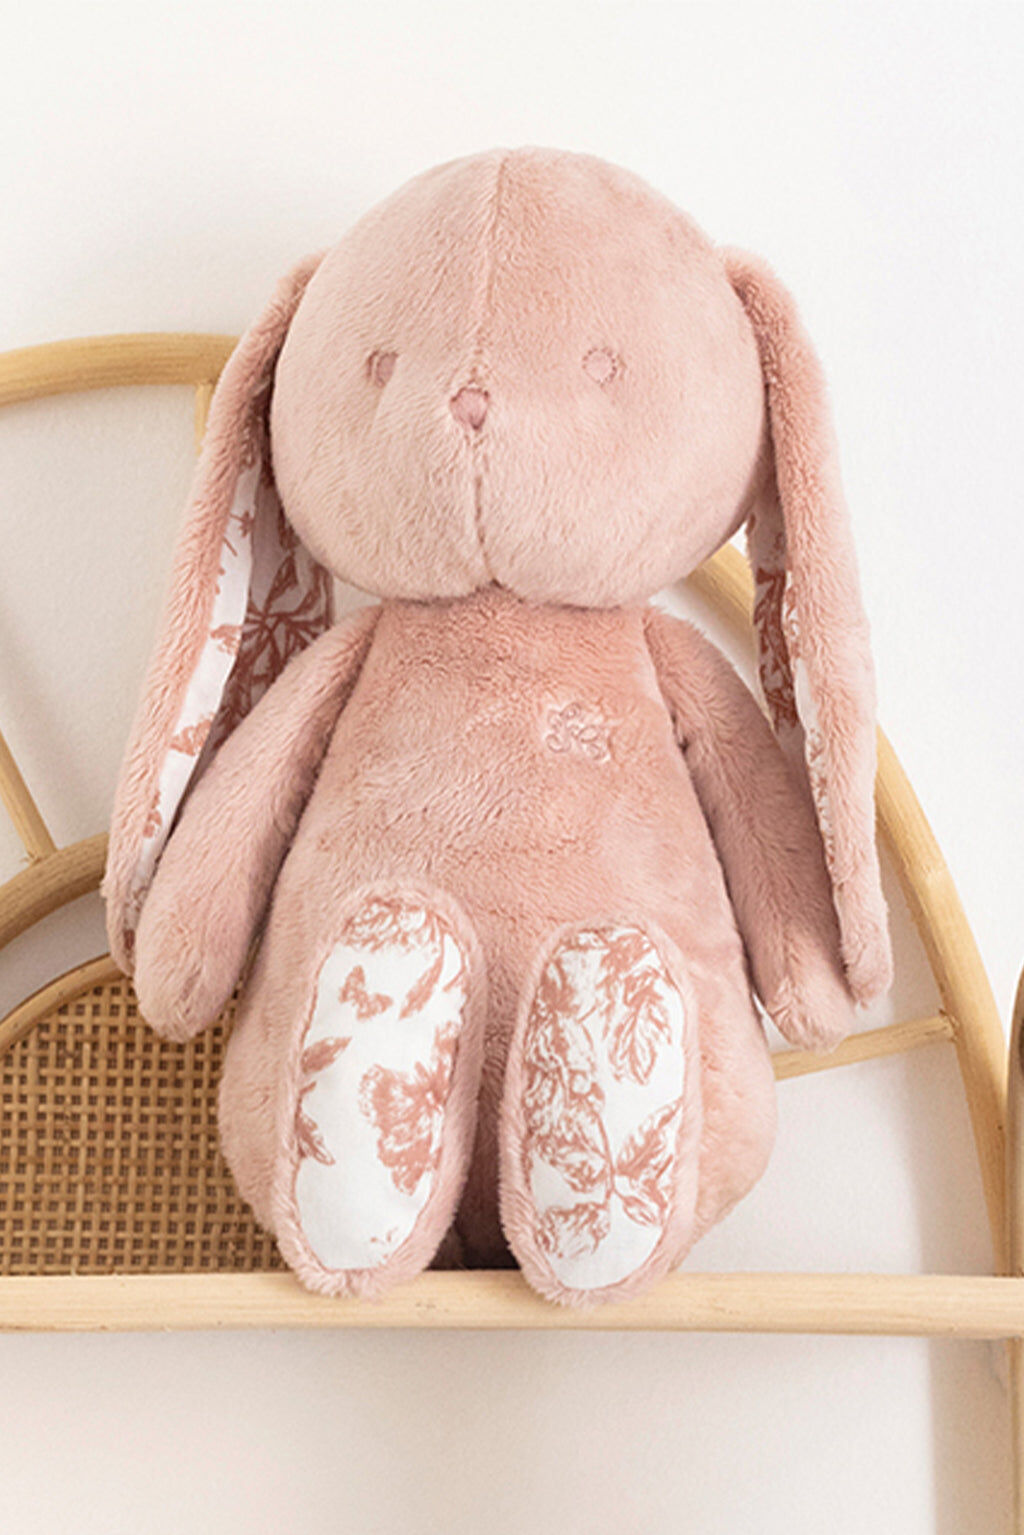 Augustin the rabbit - Toile de Jouy Pink 25cm